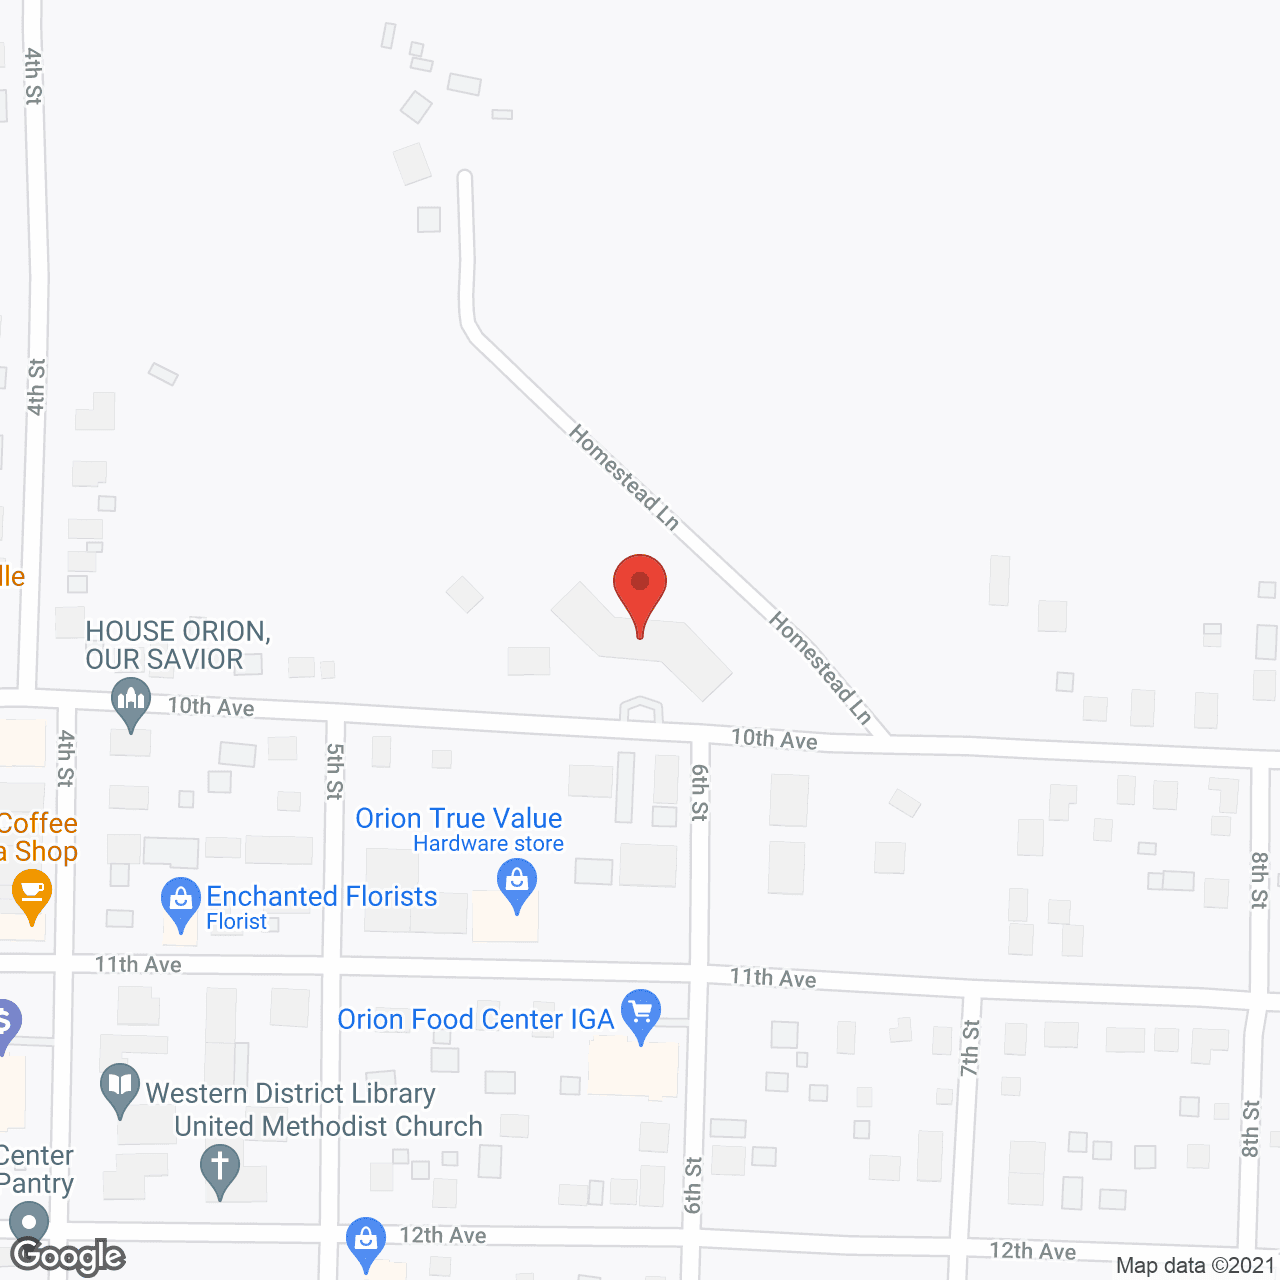 Fieldcrest Village in google map